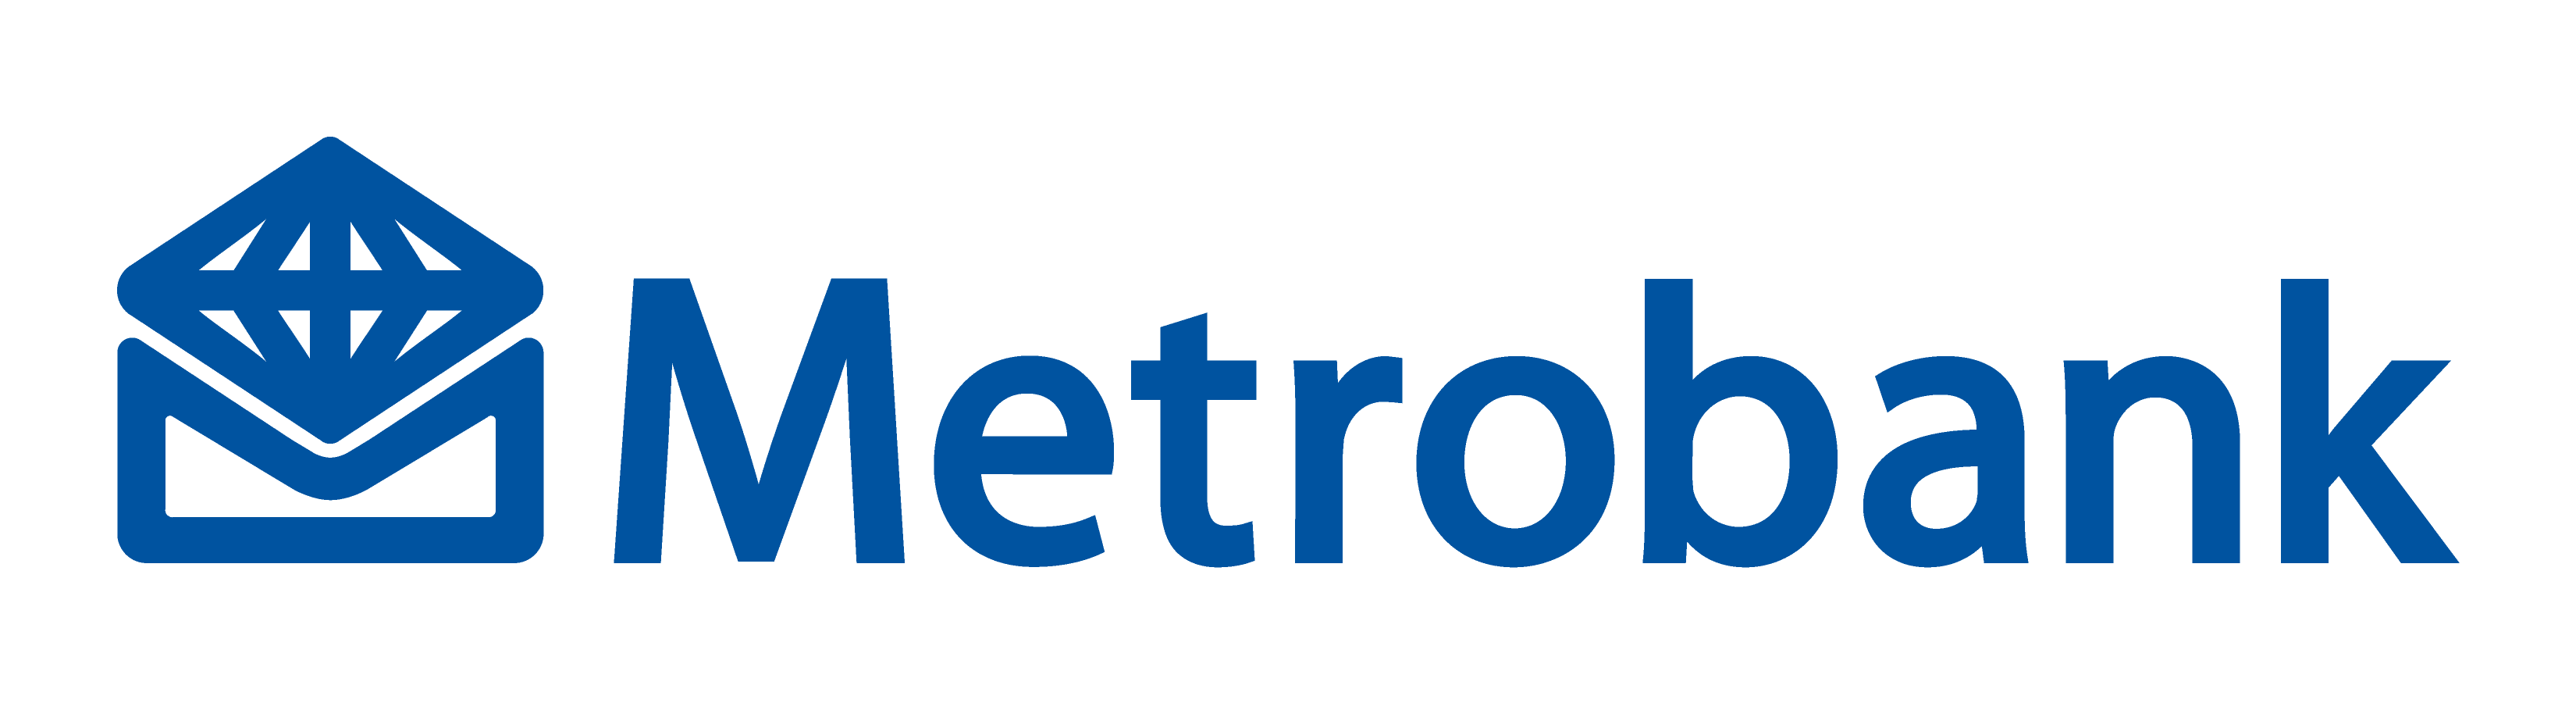 Image result for metrobank